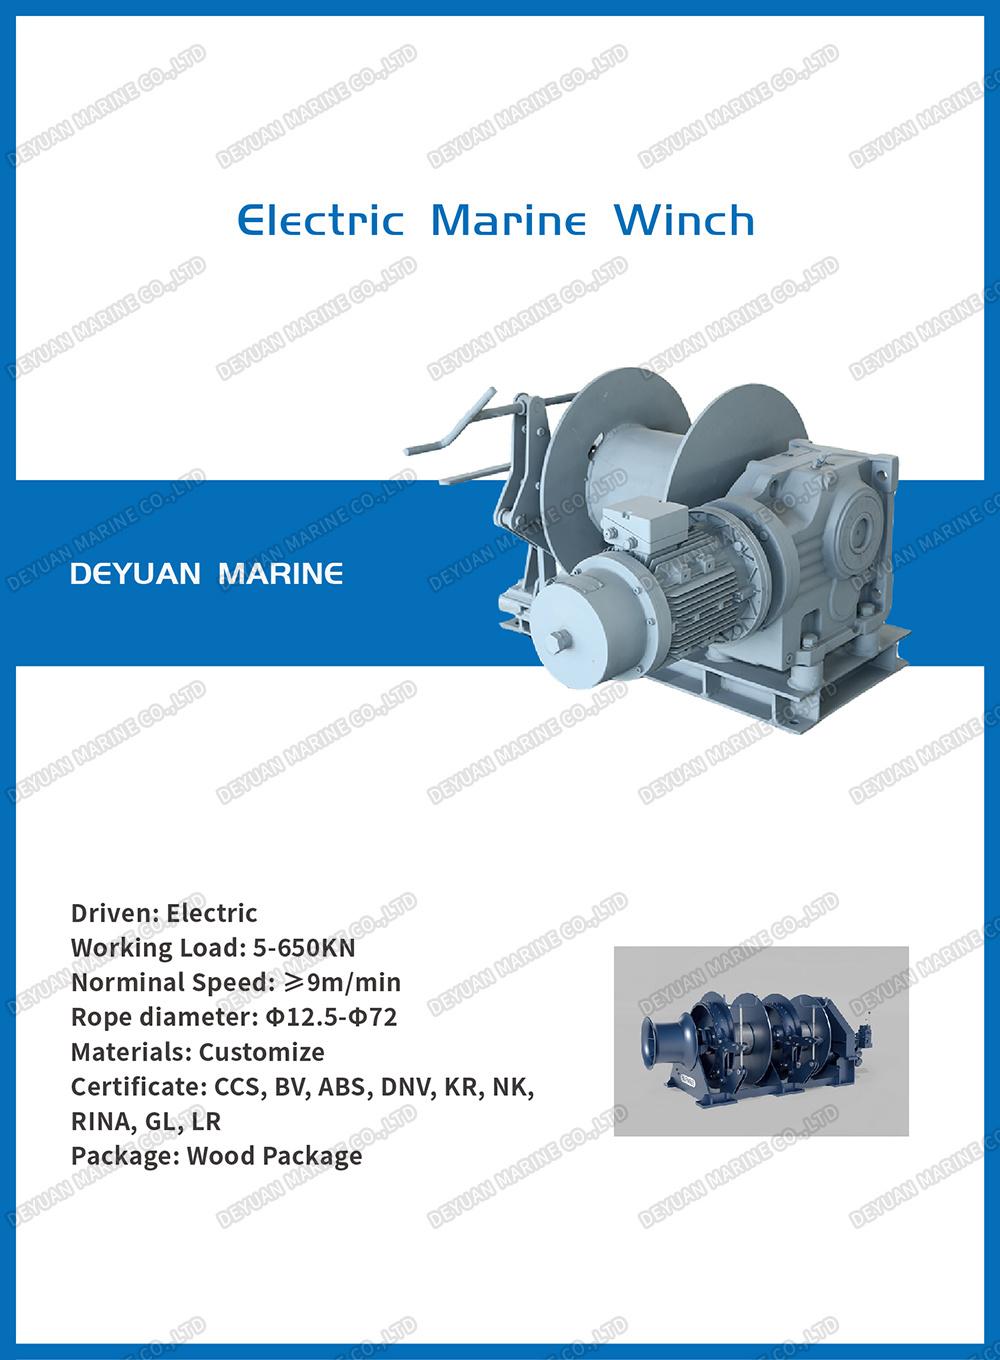 Marine Single Drum Diesel Engine Driven Winch